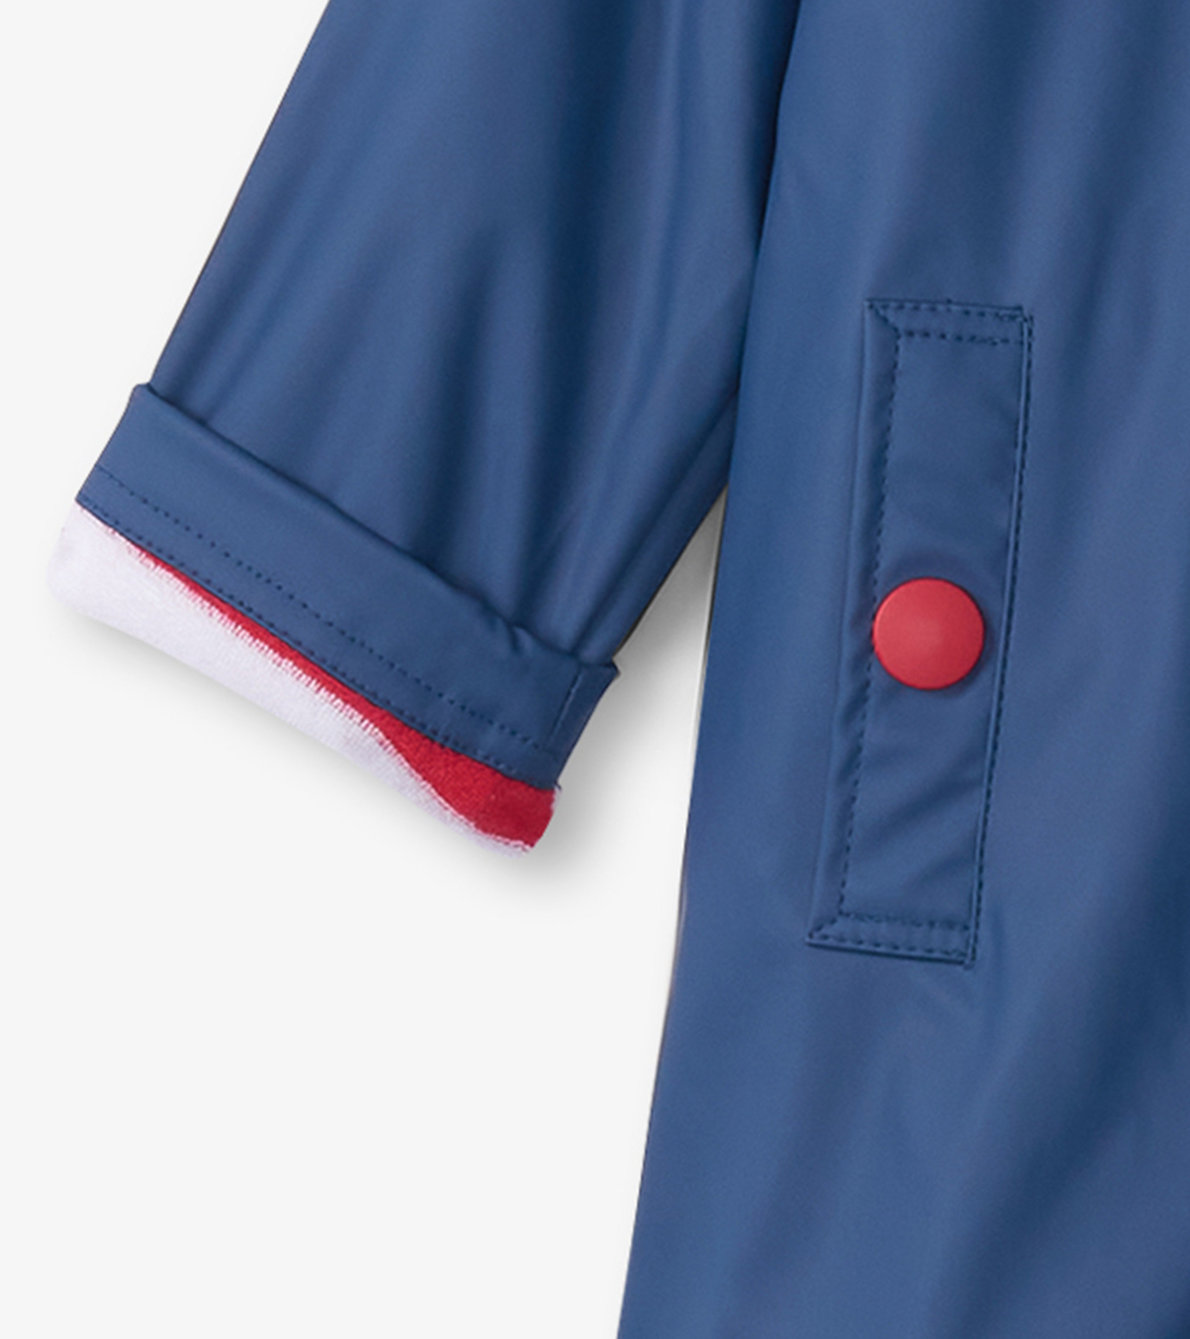 Agrandir l'image de Manteau de pluie pour enfant – Bleu marine et rayures rouges